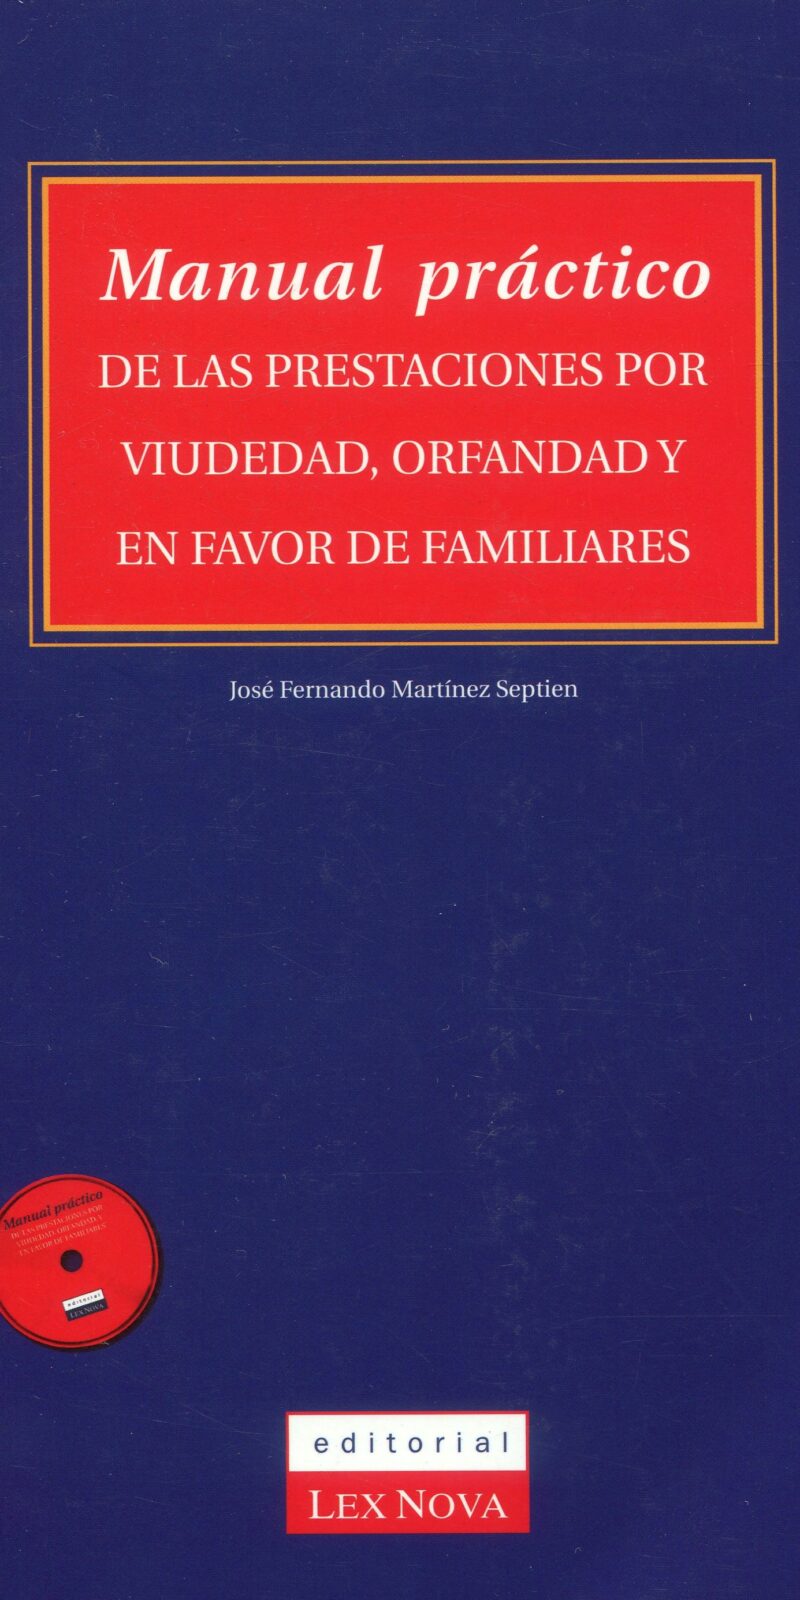 Manual práctico de las prestaciones por viudedad y orfandad en favor de familiares 9788484063247